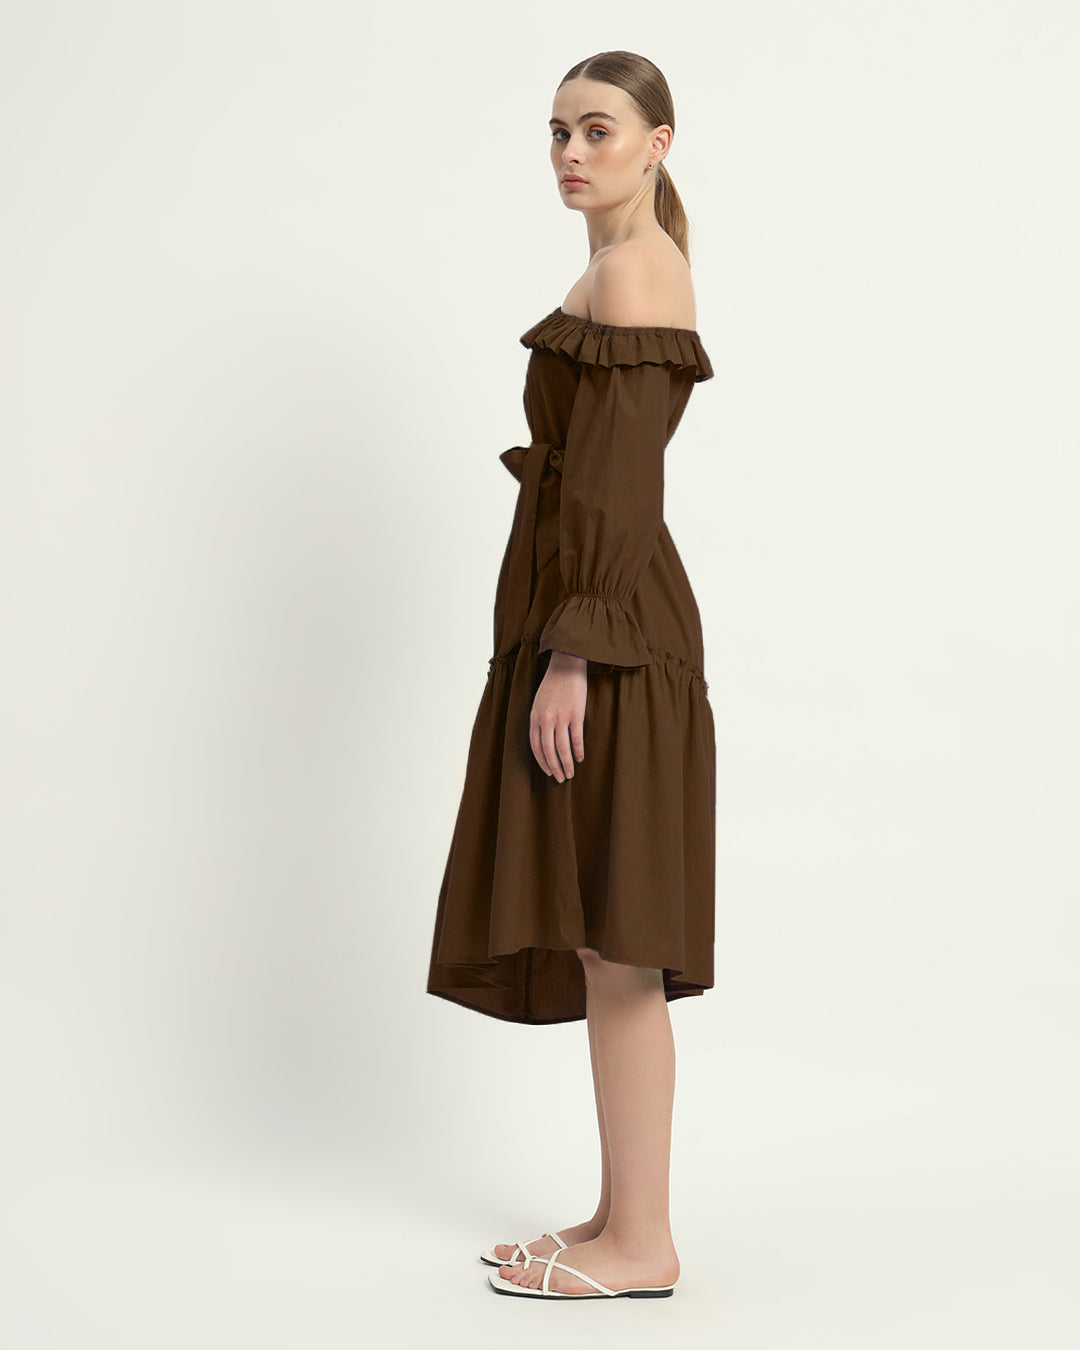 The Nutshell Stellata Cotton Dress